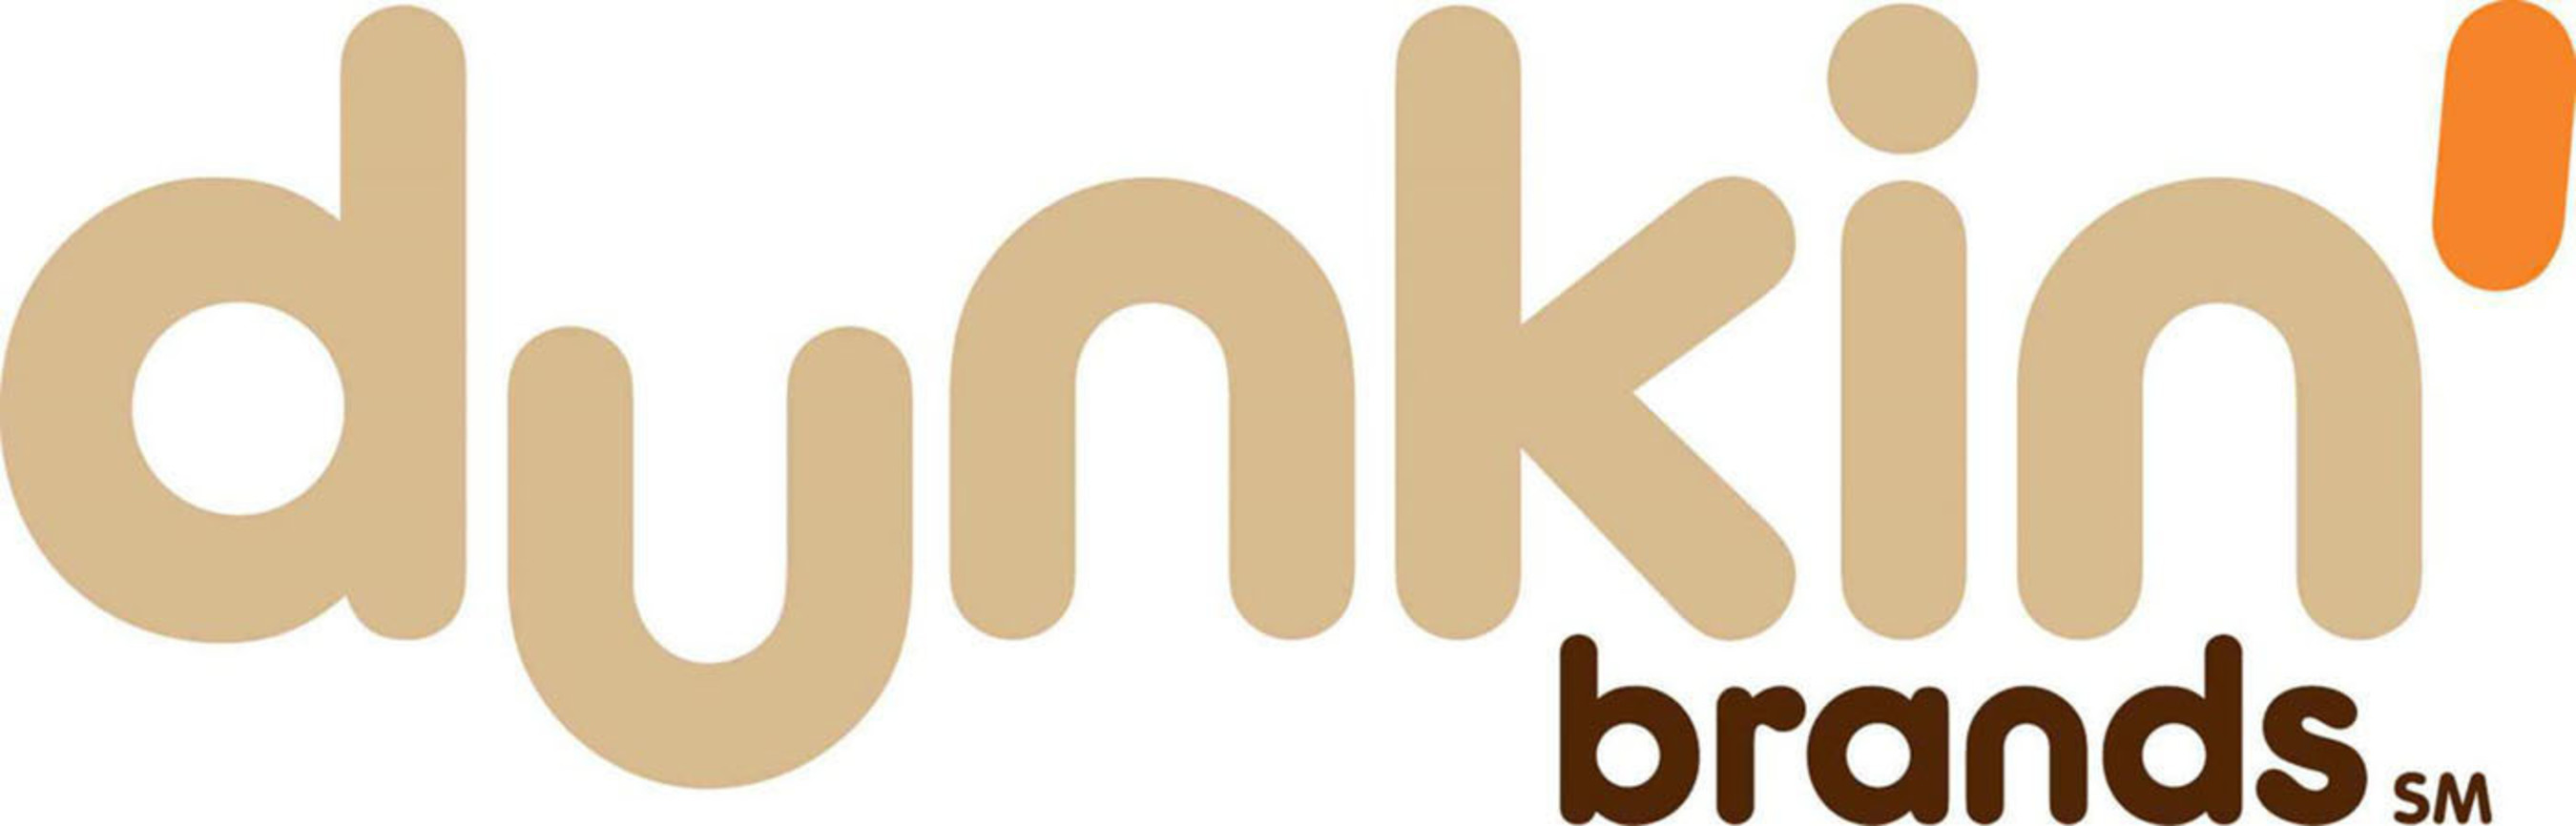 Dunkin' Brands. (PRNewsFoto/Dunkin' Brands) (PRNewsFoto/)